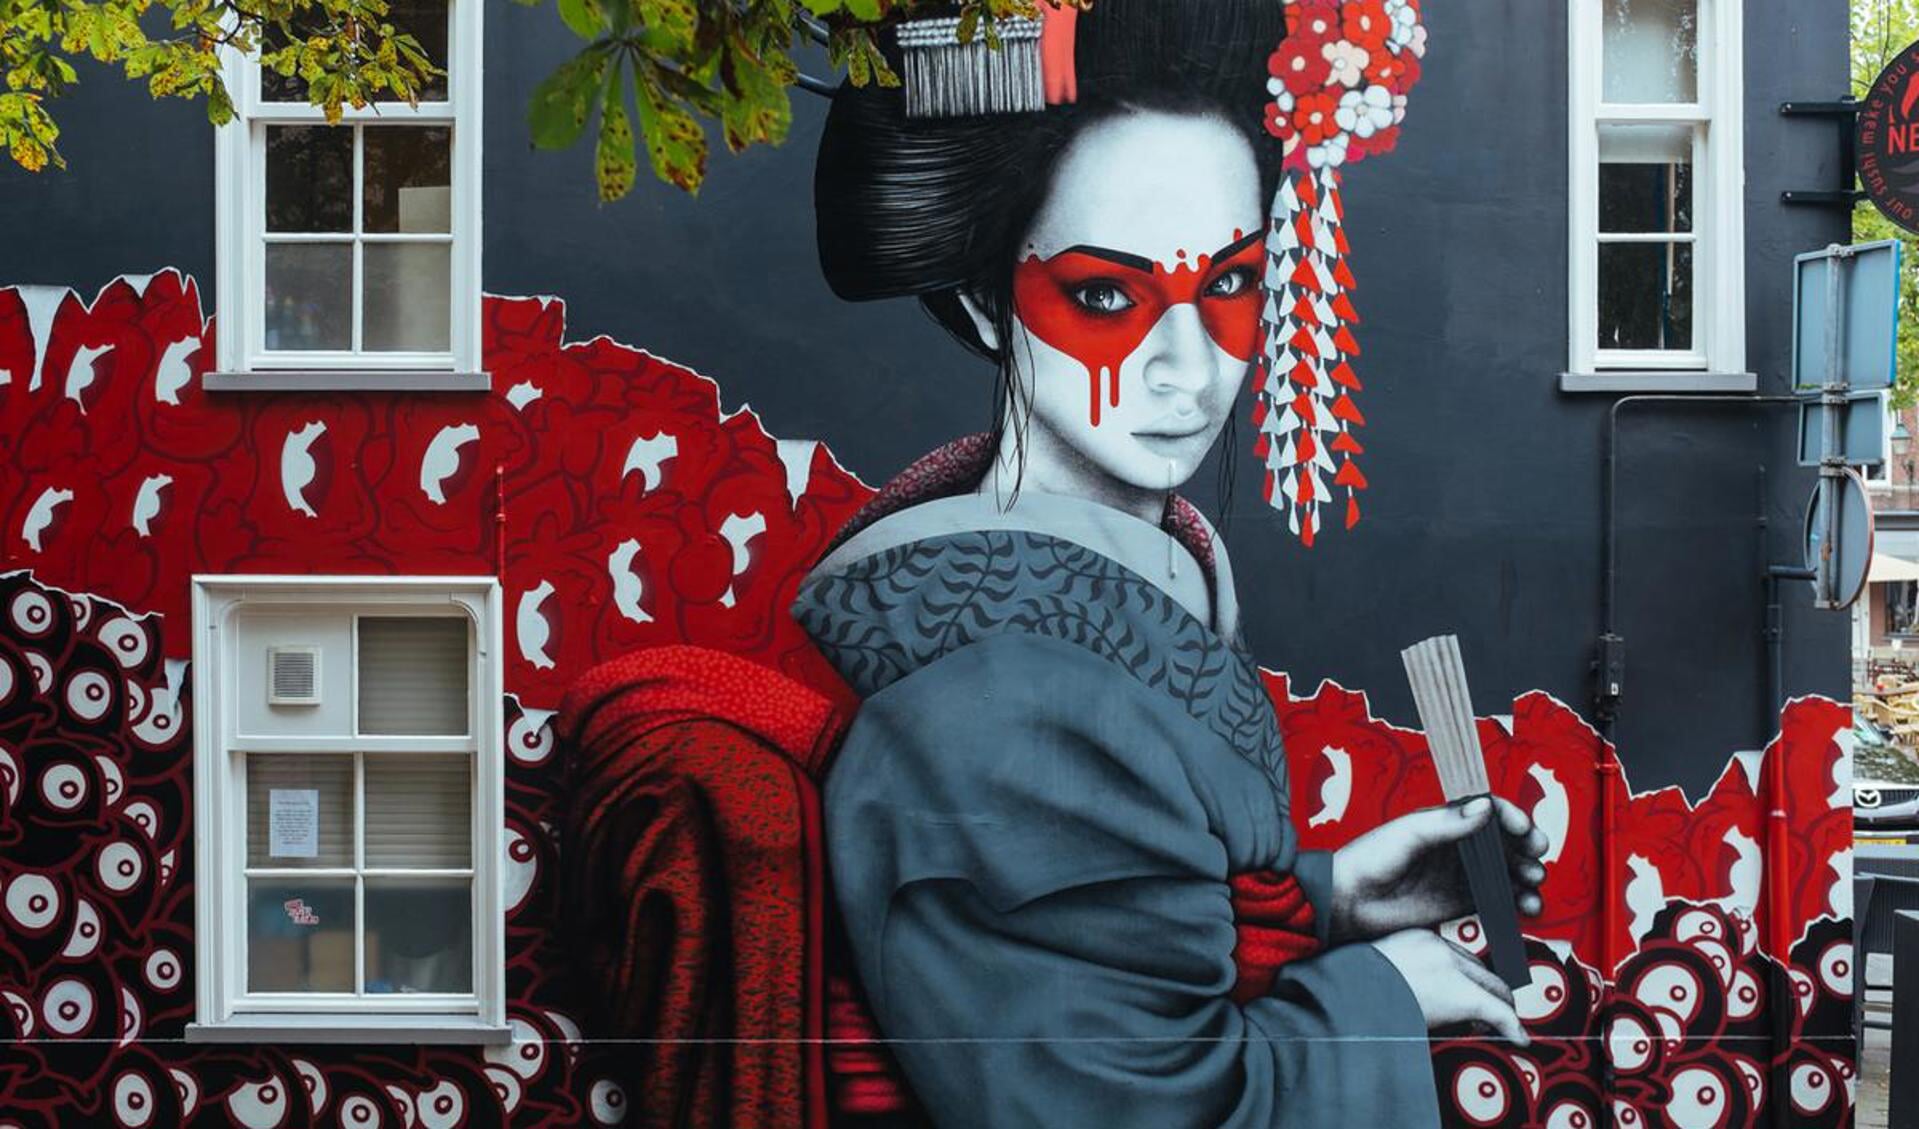 Streetartist Finnbar heeft een muur van de sushibar op de Ginnekenmarkt omgetoverd tot een grote Geisha.